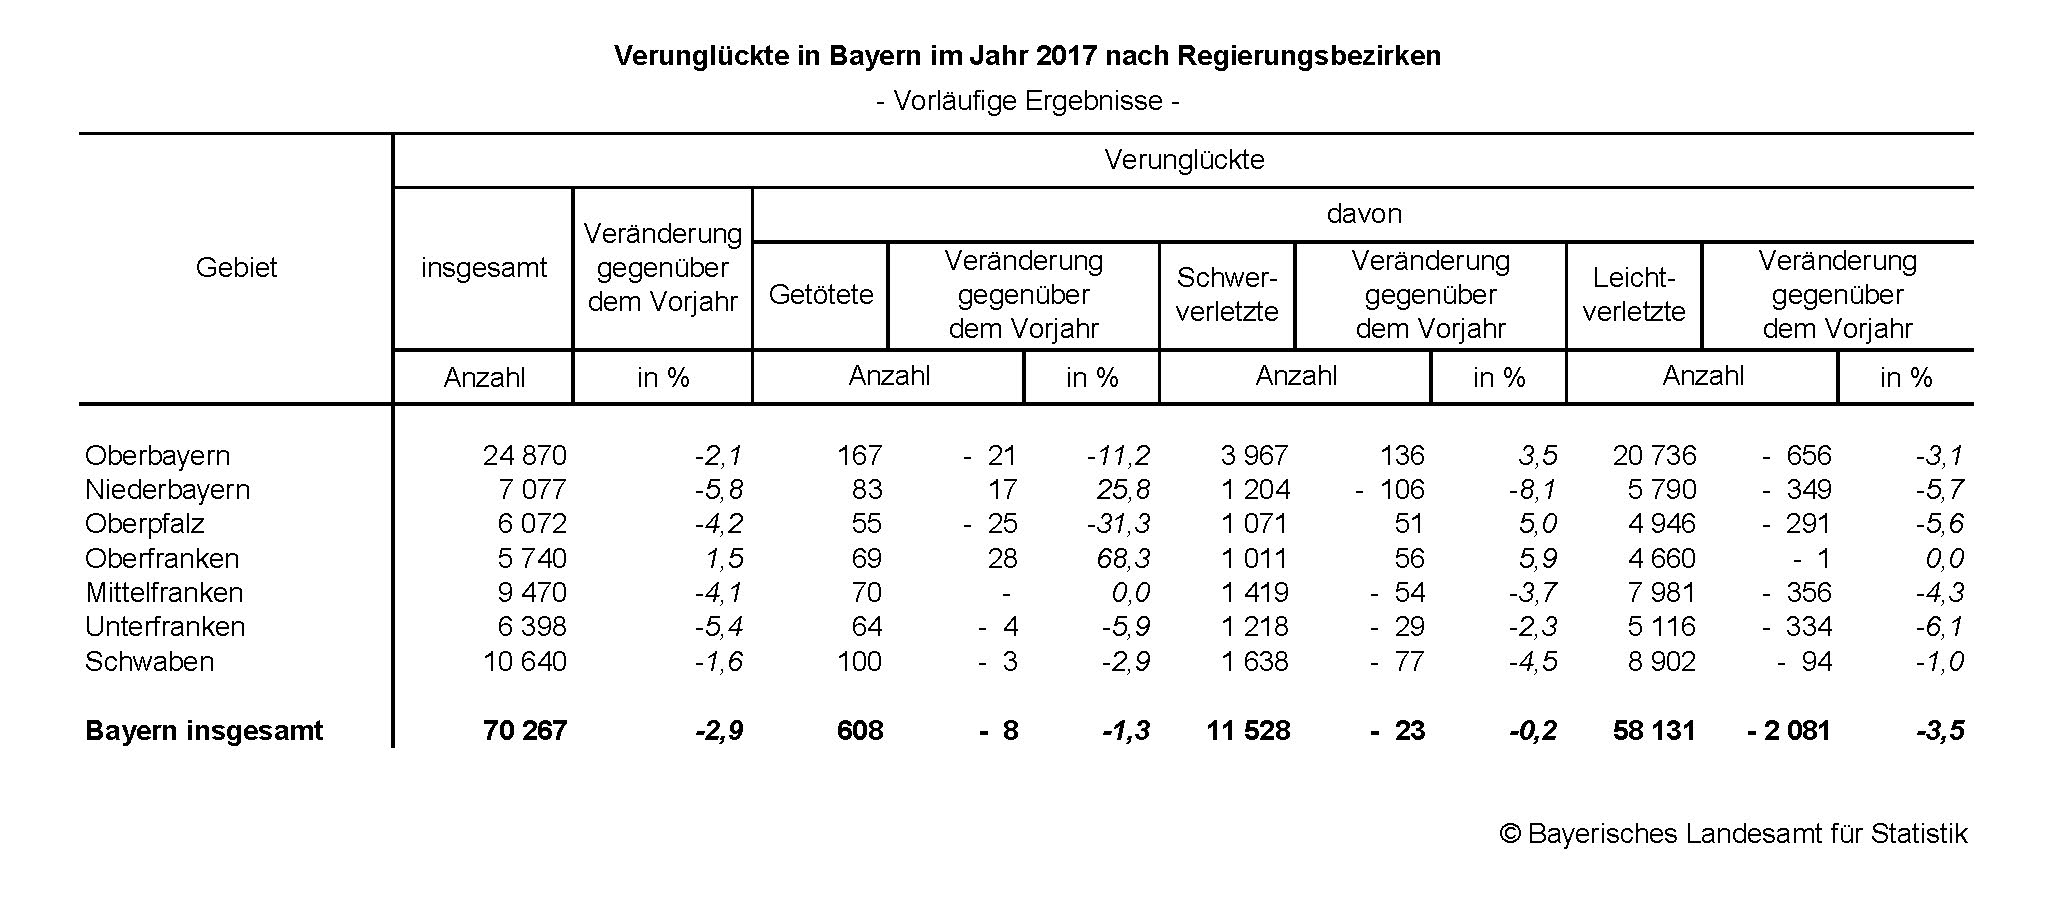 Verunglückte Nach Regierungsbezirken im Jahr 2017